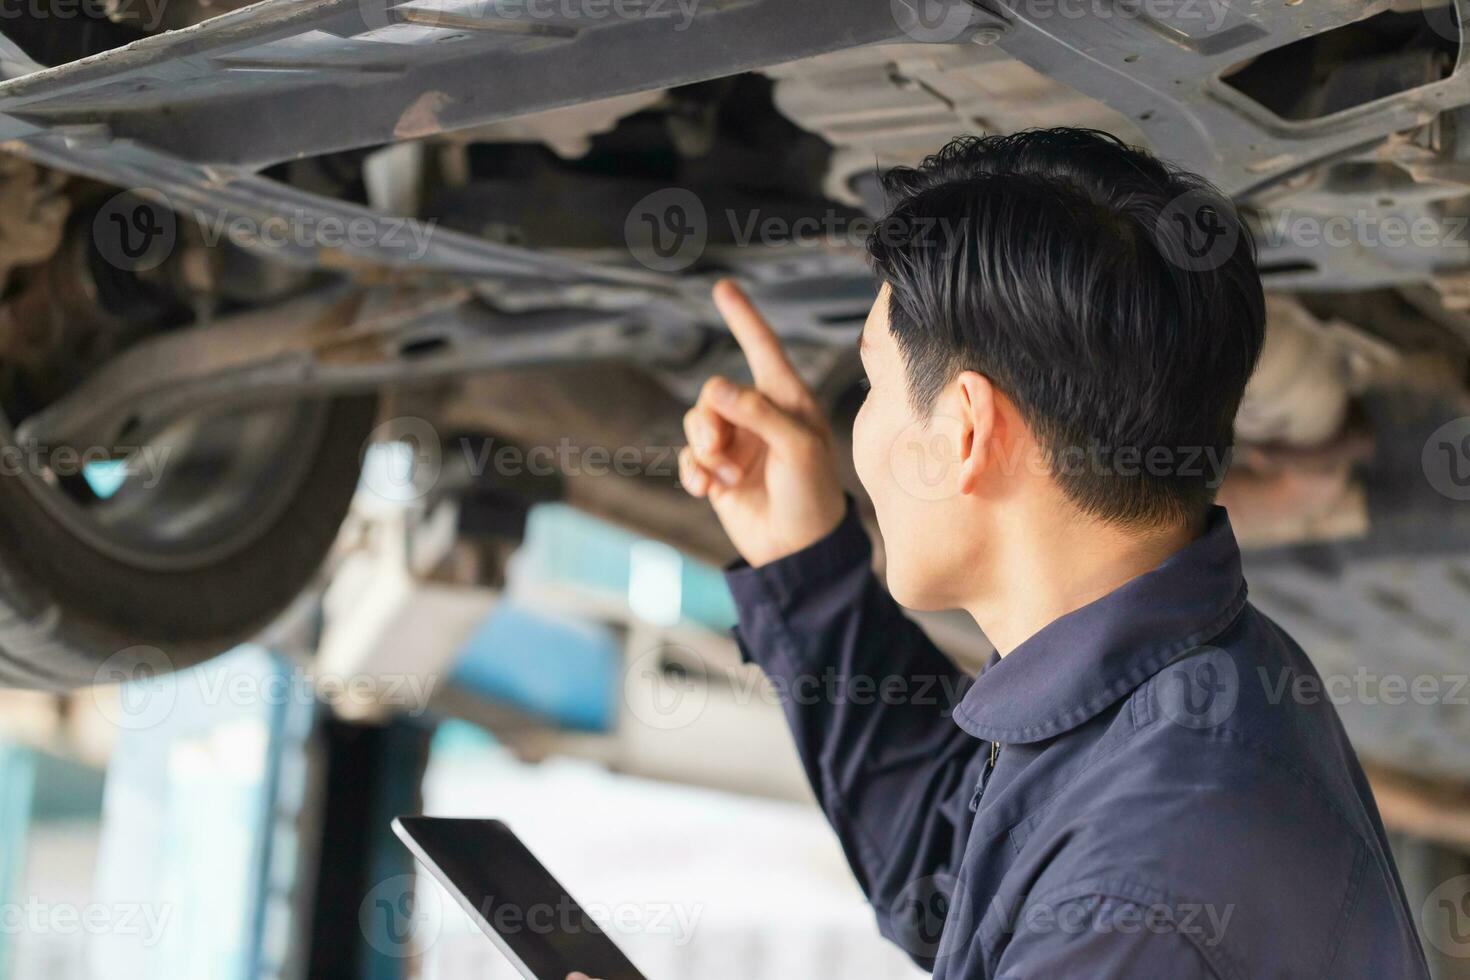 Auto Mechaniker Arbeiten im Garage, Techniker Mann Arbeiten im Auto Bedienung mit angehoben Fahrzeug, Auto Reparatur, und Instandhaltung foto